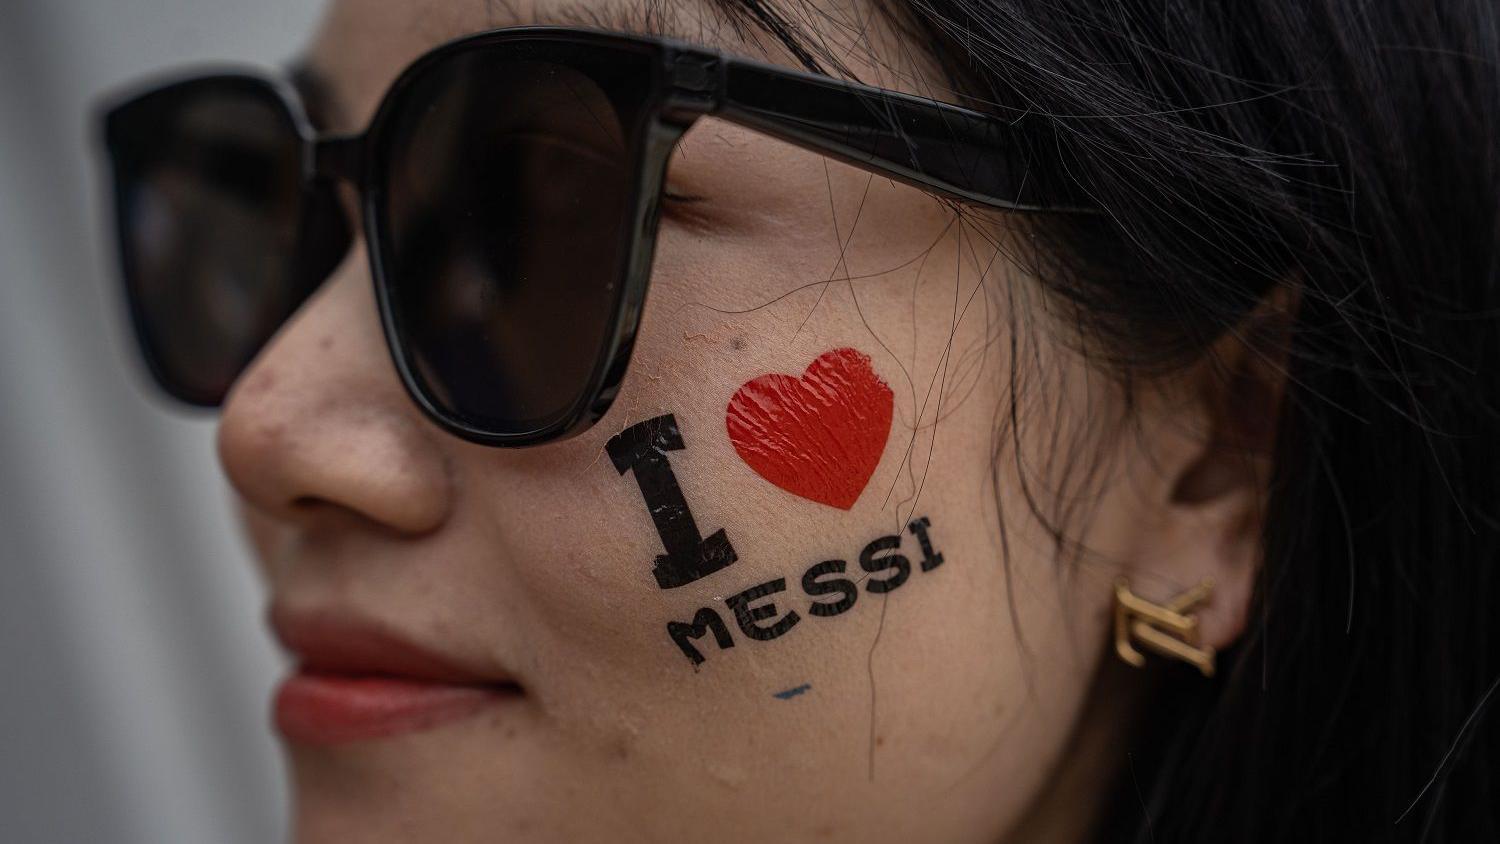 مشجعة تتزين بشعار "أنا أحب ميسي" في هونغ كونغ